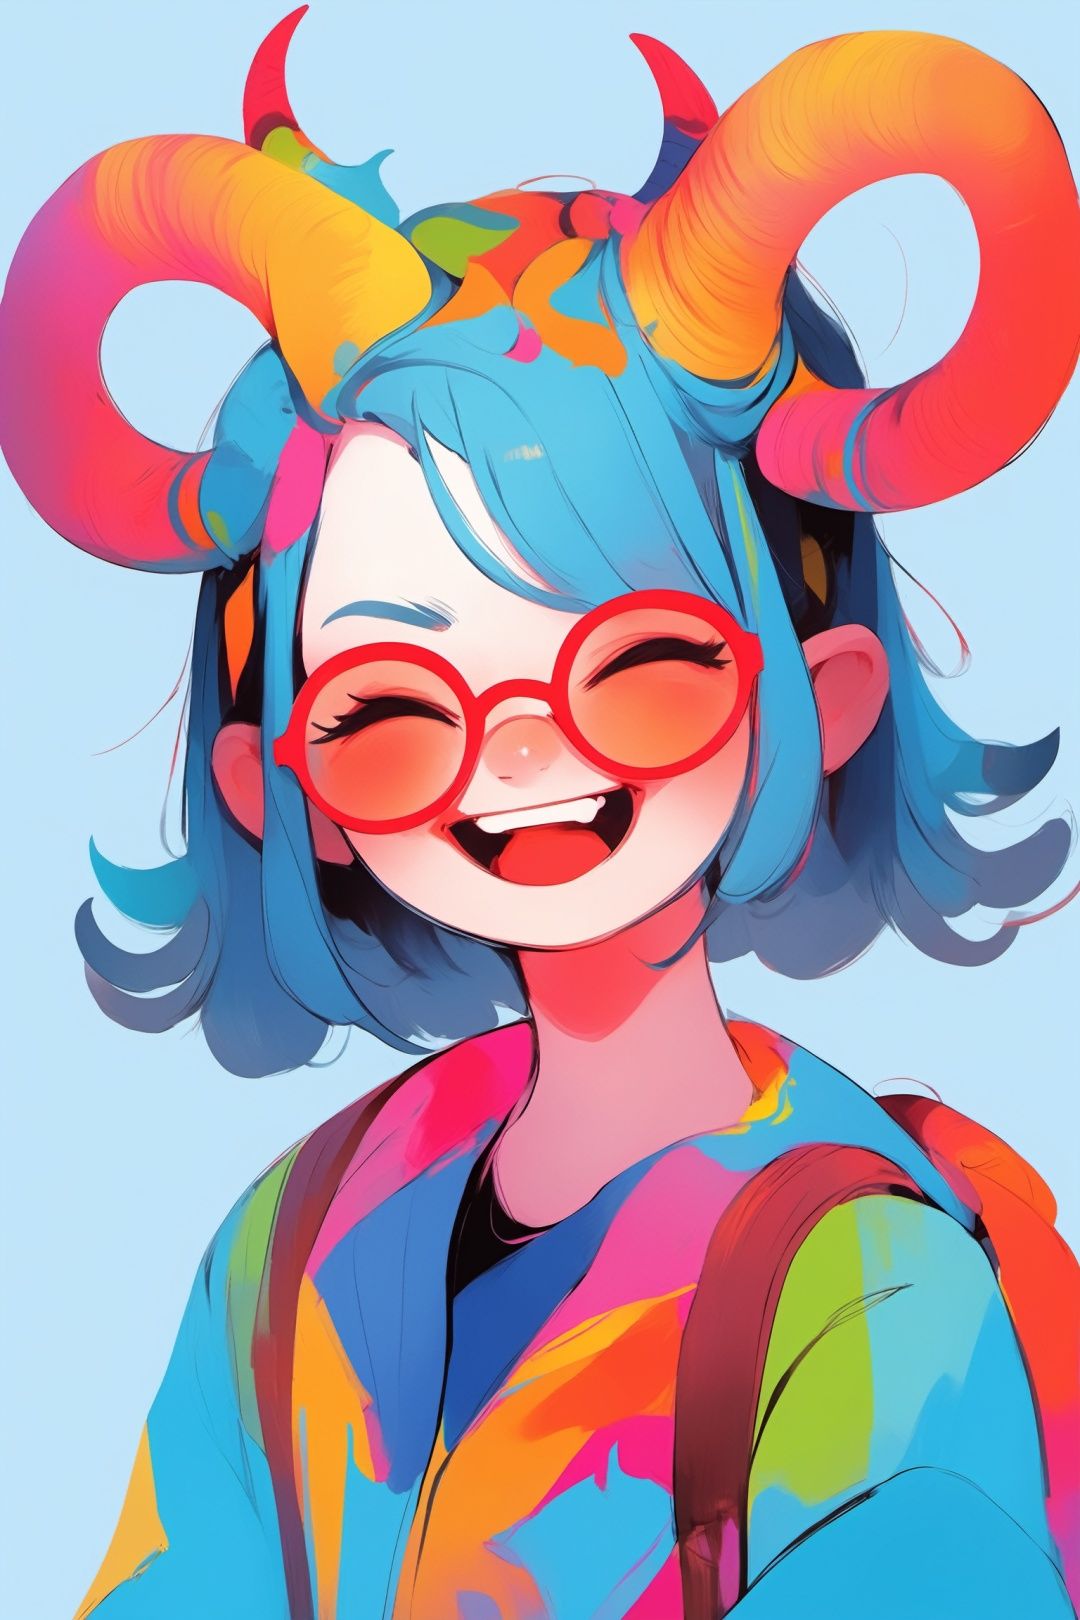 A girl, horns, glasses, happy, full body description, blue background